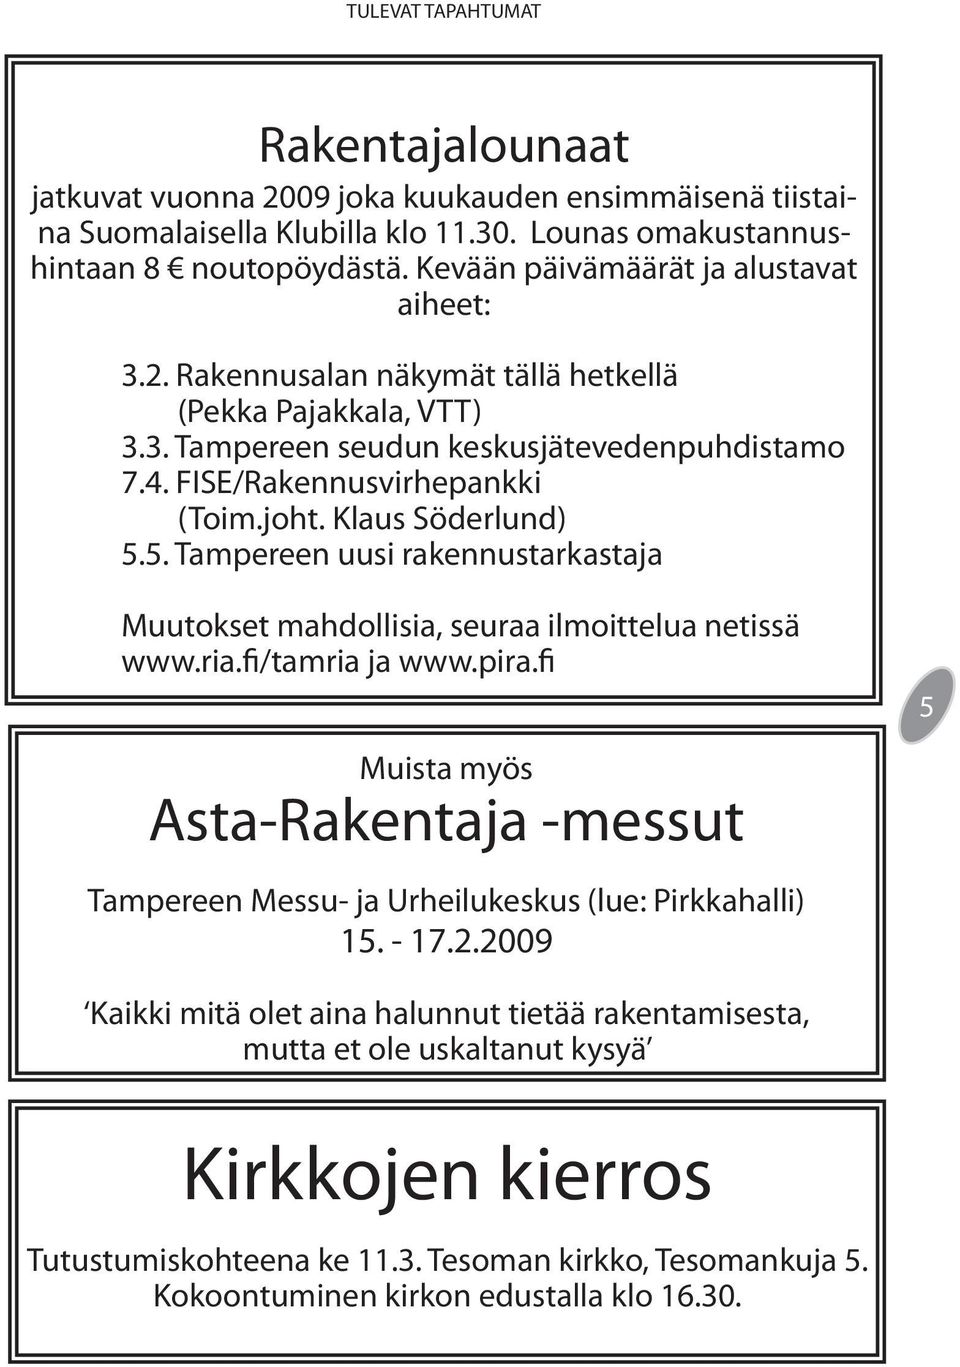 Klaus Söderlund) 5.5. Tampereen uusi rakennustarkastaja Muutokset mahdollisia, seuraa ilmoittelua netissä www.ria.fi/tamria ja www.pira.